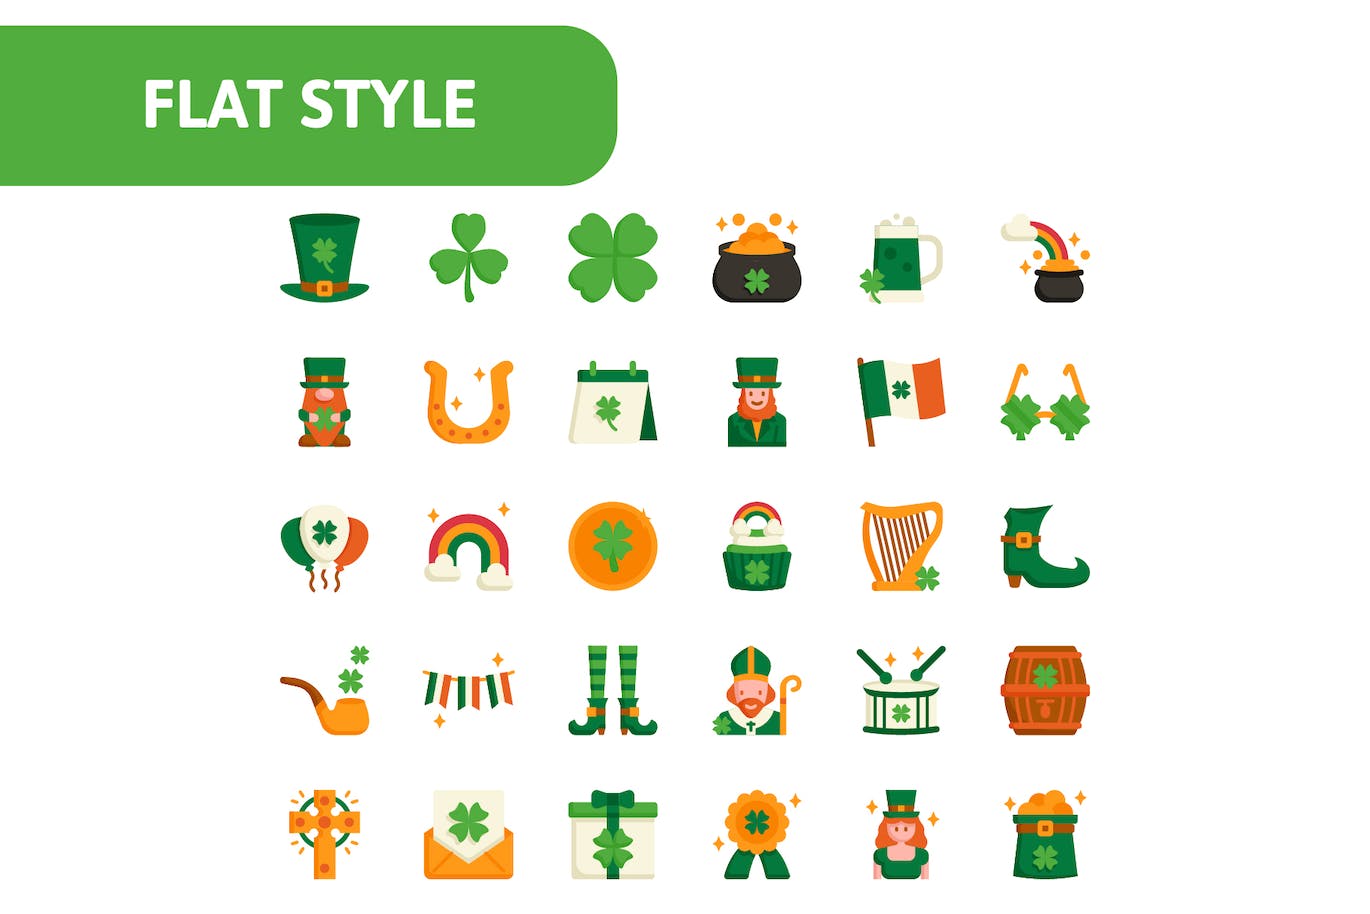 30个高质量的圣帕特里克节矢量图标 30 St Patrick’s Day Icons 图标素材 第4张